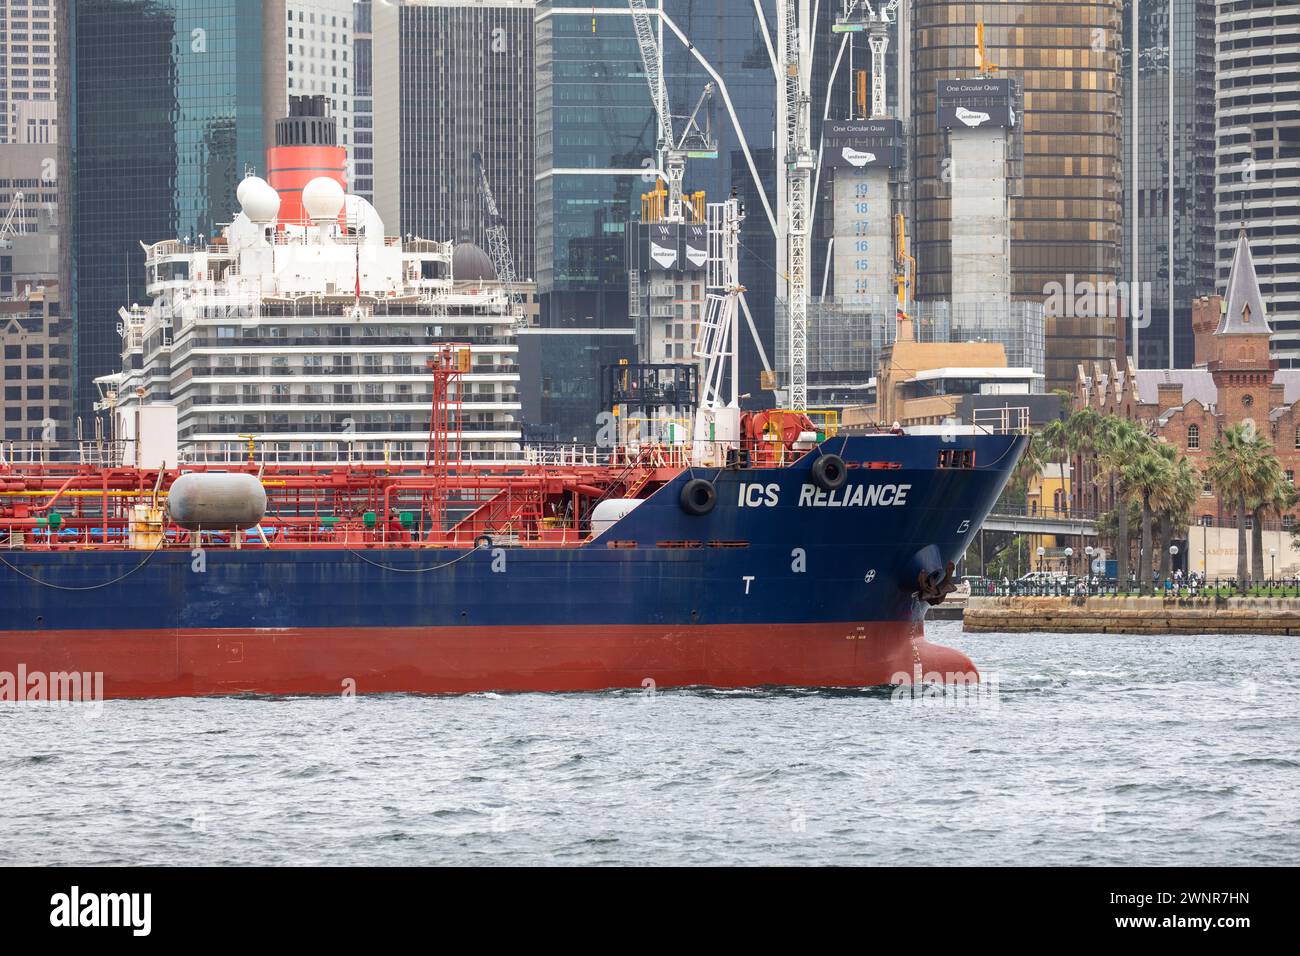 Sydney Australie, navire-citerne ICS Reliance sur le port de Sydney au départ de Circular Quay, Sydney, NSW, Australie Banque D'Images